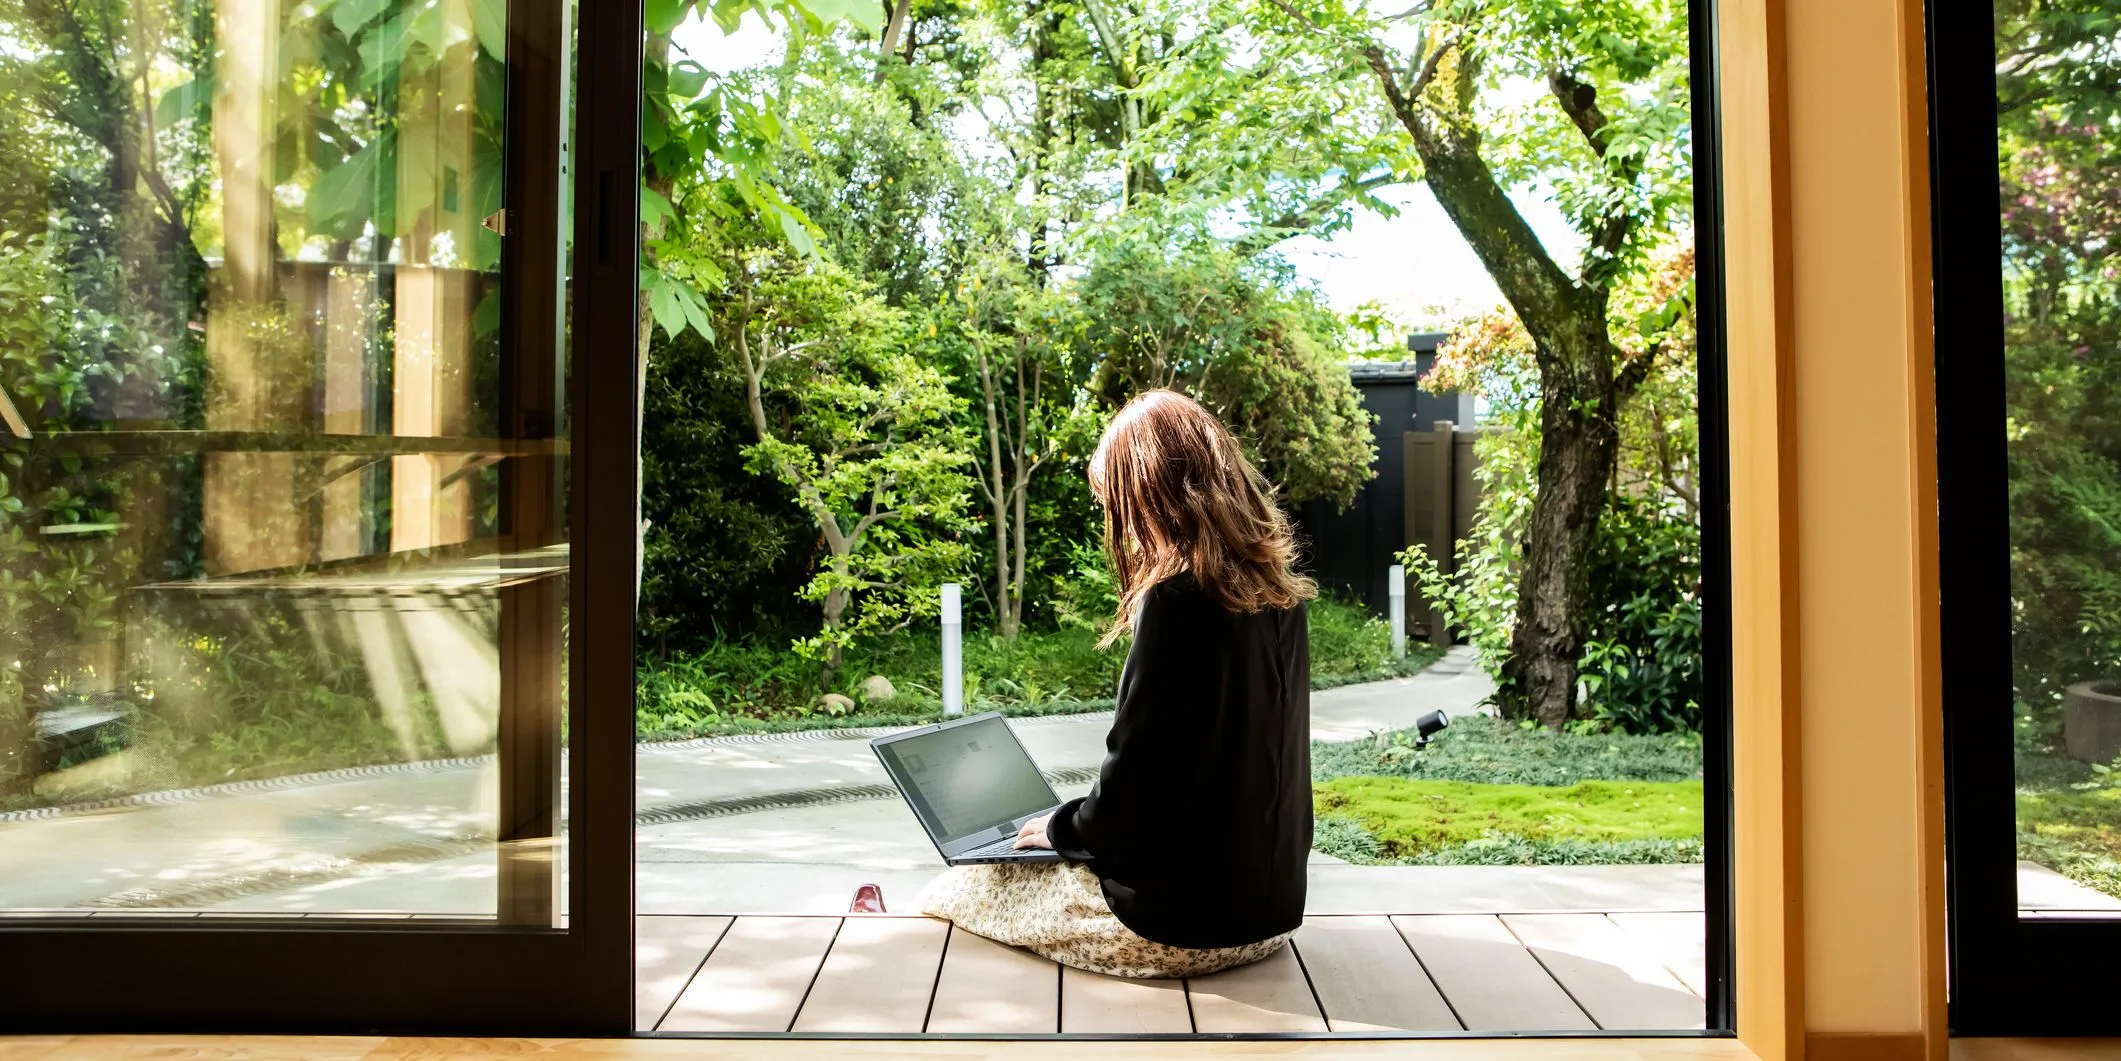 Donna al PC in veranda con giardino rigoglioso